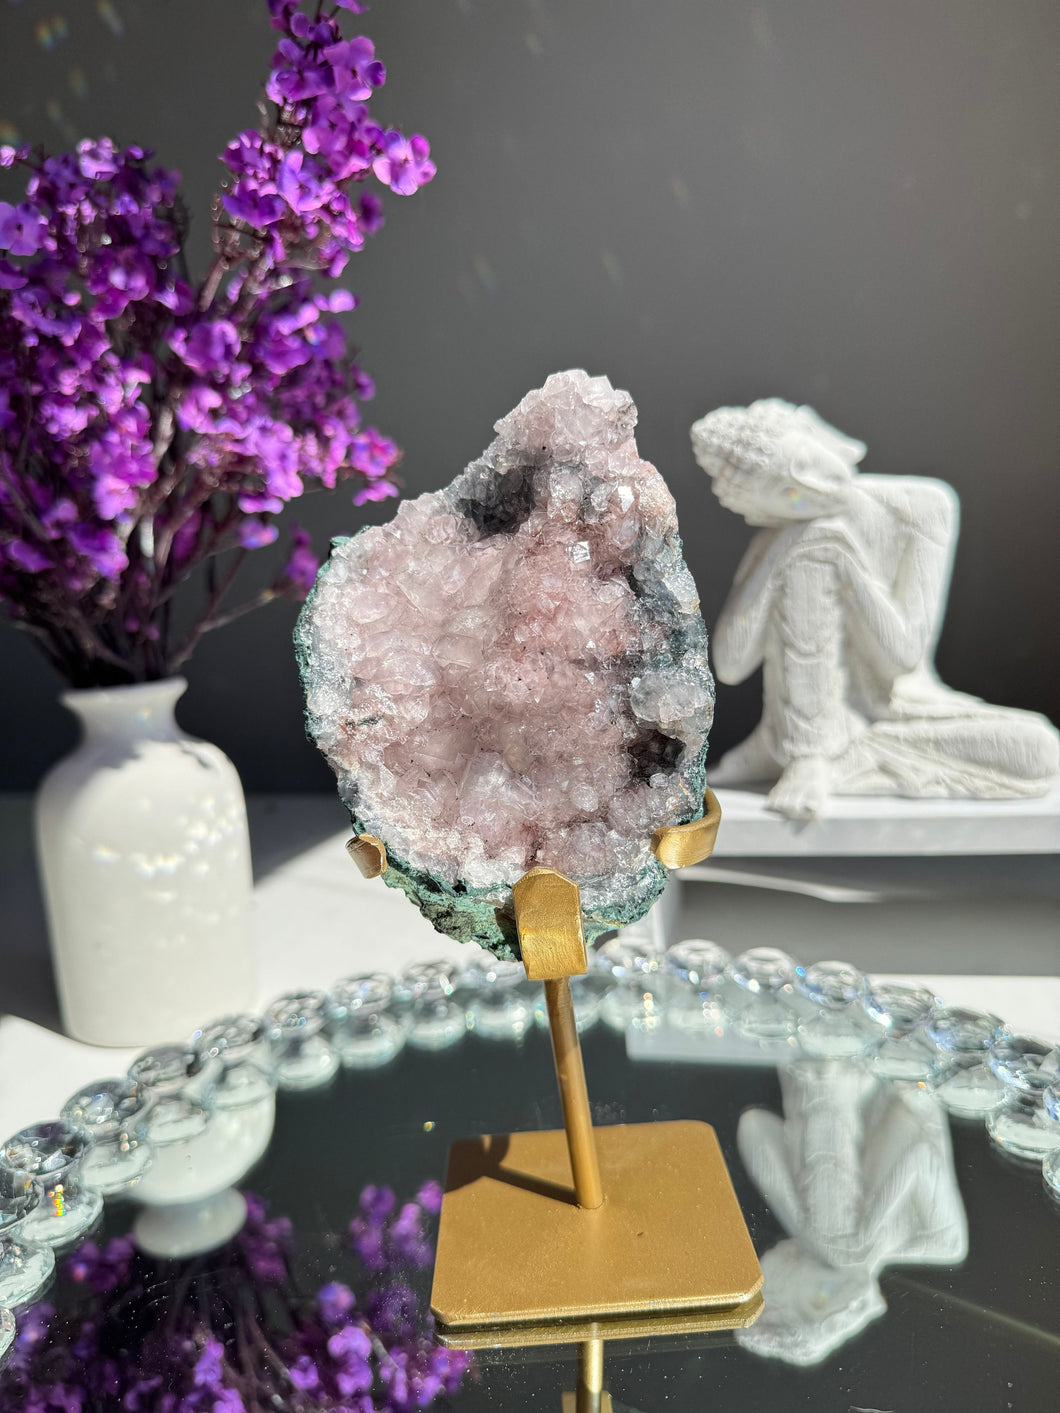 Pink flower amethyst geode with jasper Healing crystals 2770